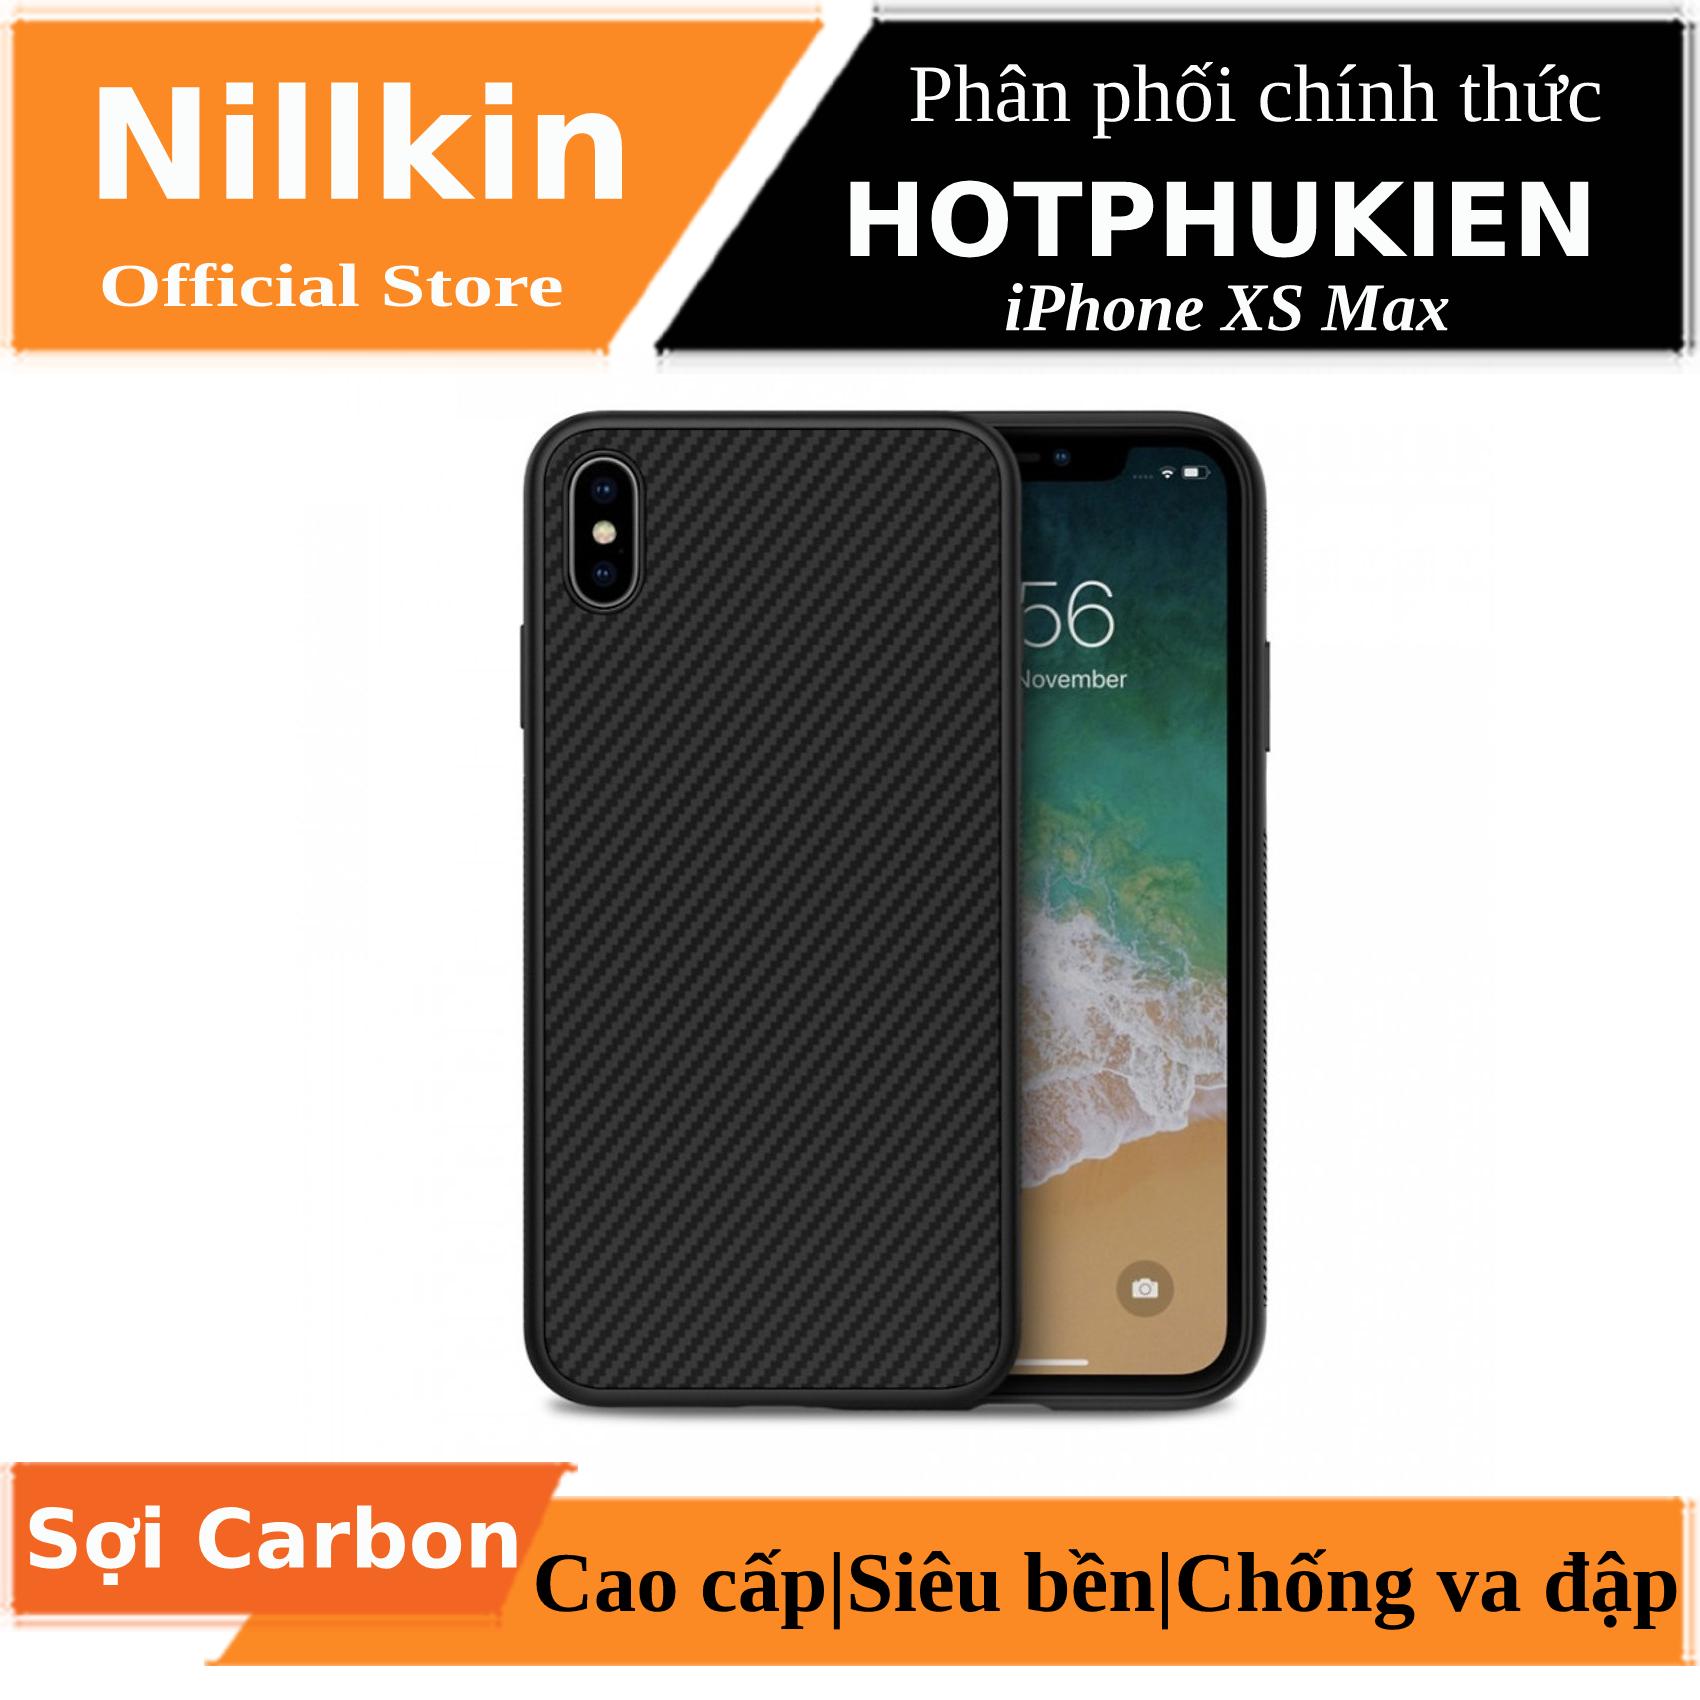 Ốp lưng chống sốc sợi Carbon cho iPhone Xs Max hiệu Nillkin